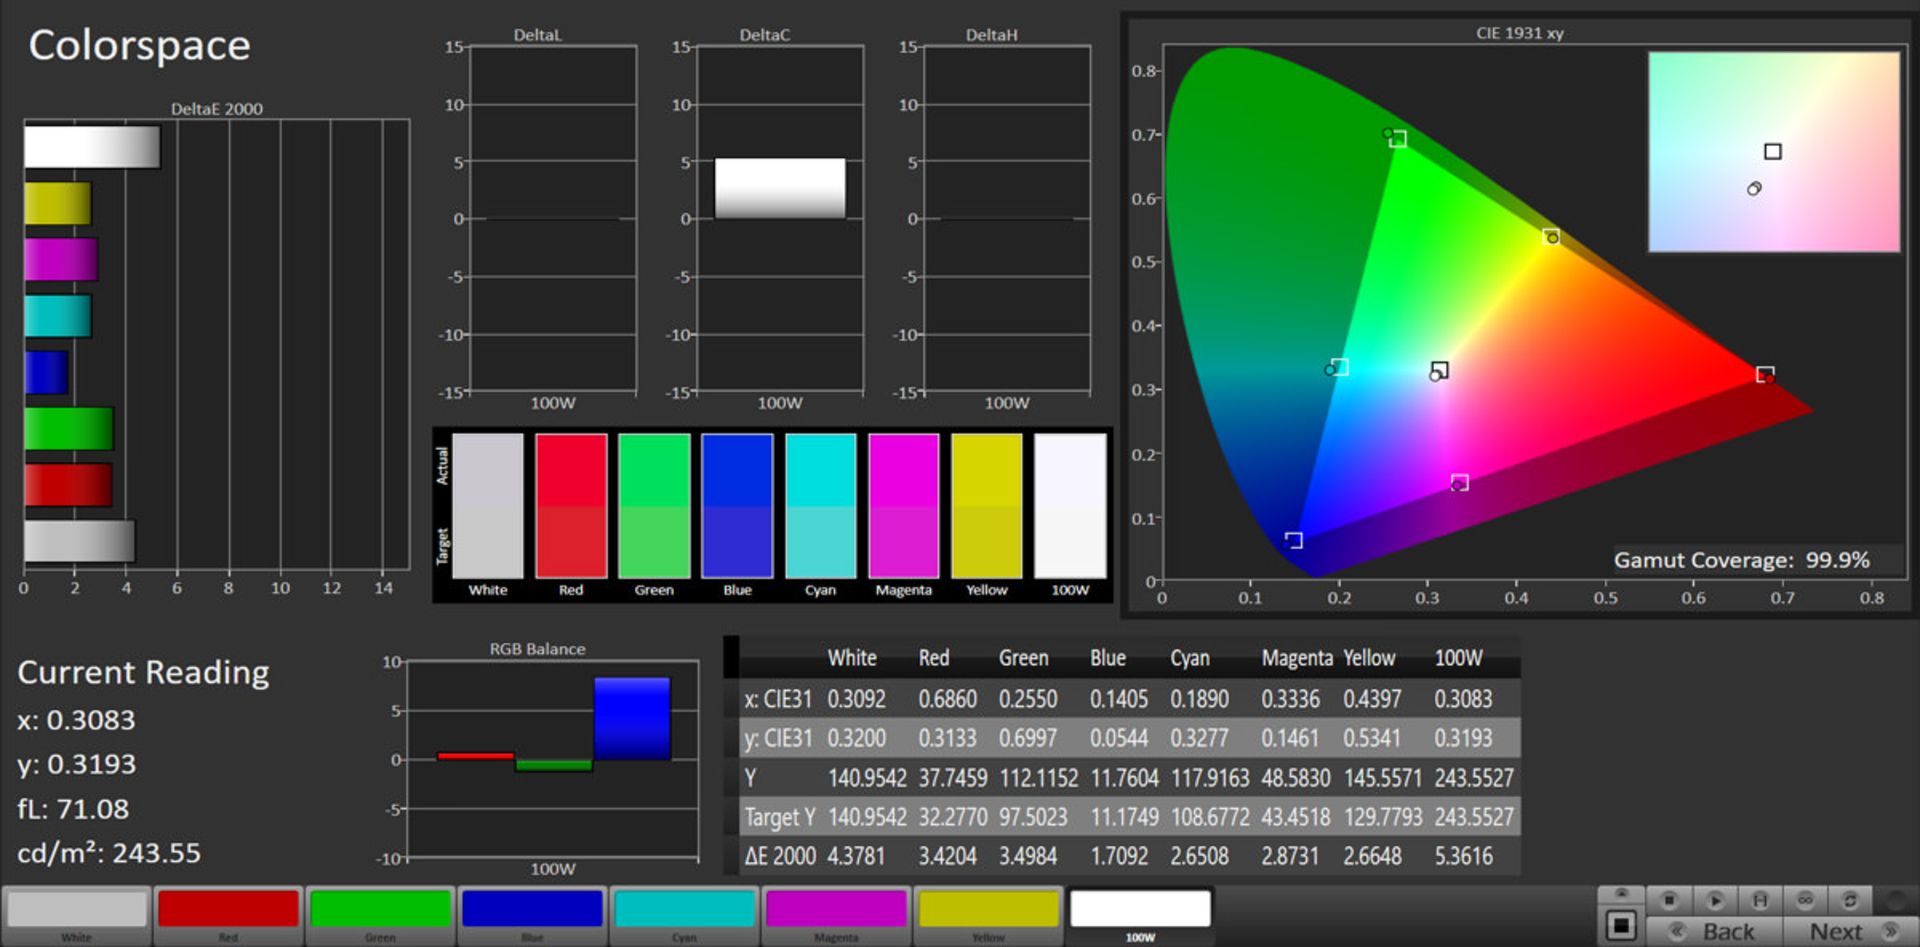 مرجع متخصصين ايران آزمايش پوشش فضاي رنگ نمايشگر گلكسي نوت ۲۰ در حالت Vivid و فضاي رنگي DCI-P3